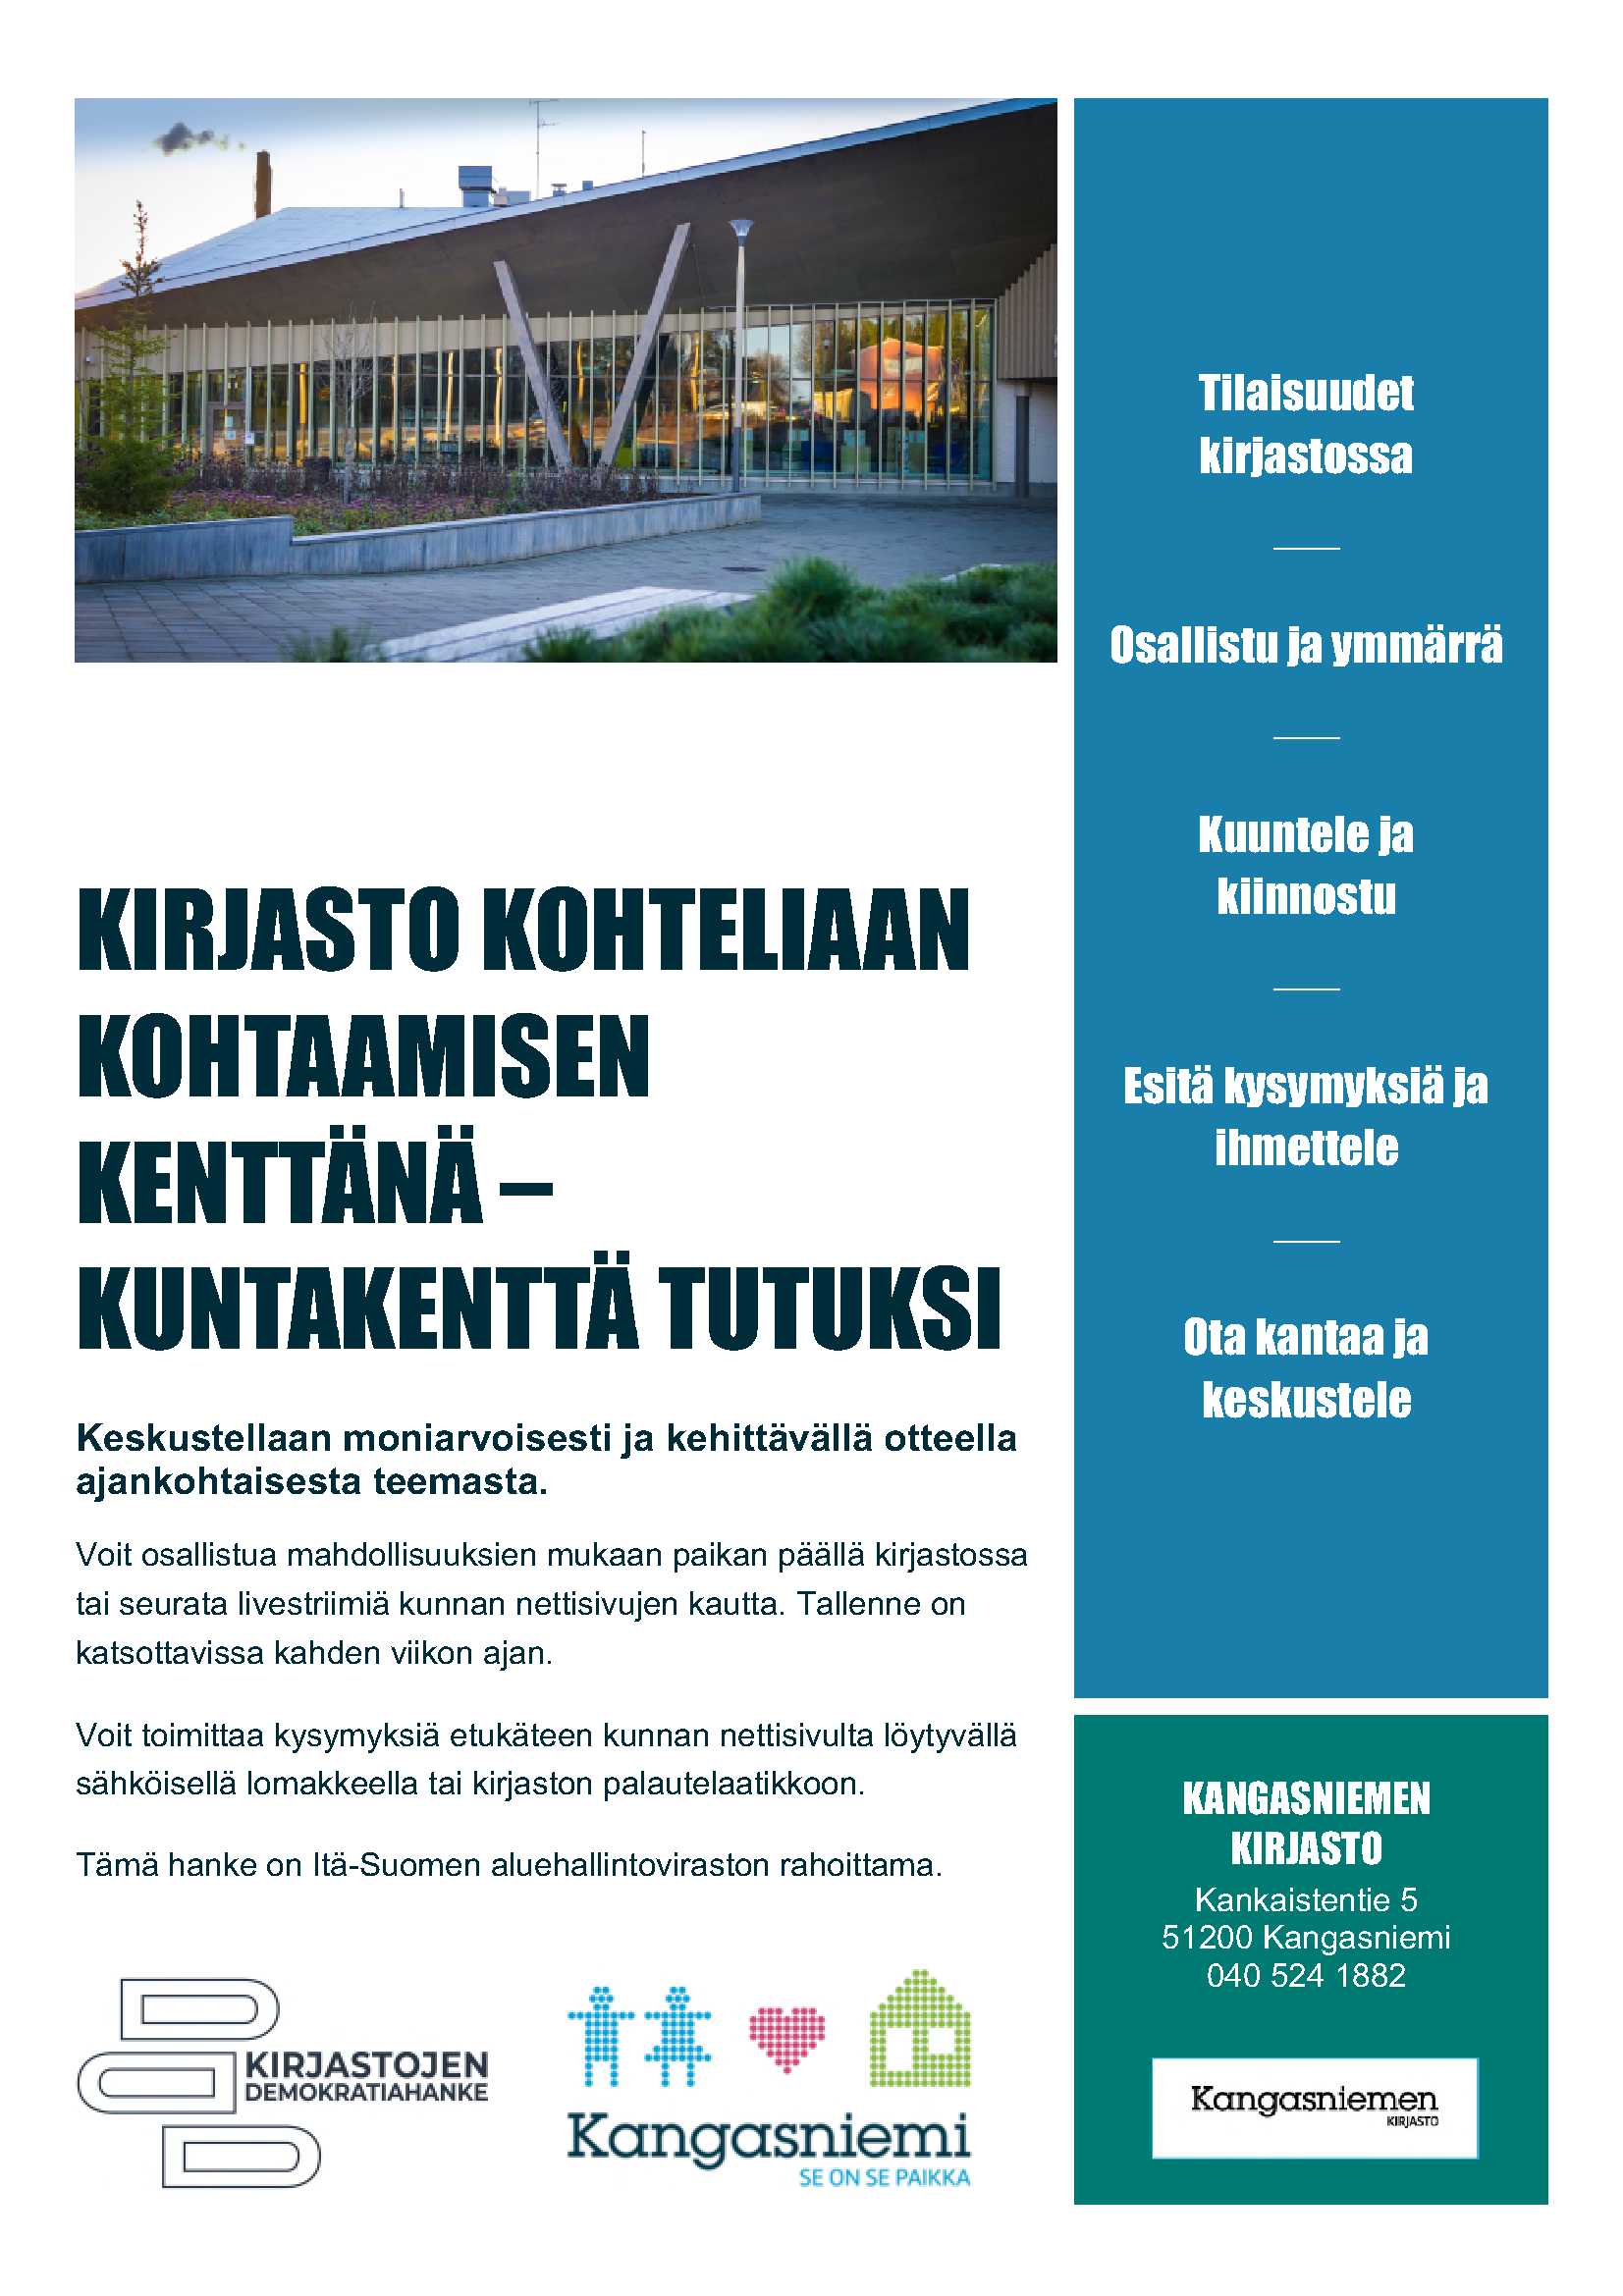 Mainos Kirjasto kohteliaan kohtaamisen kenttänä -tilaisuudesta, ylhäällä kuva Kangasniemen kirjastosta, alhaalla ja sivulla kuvailtu tapahtumaa.